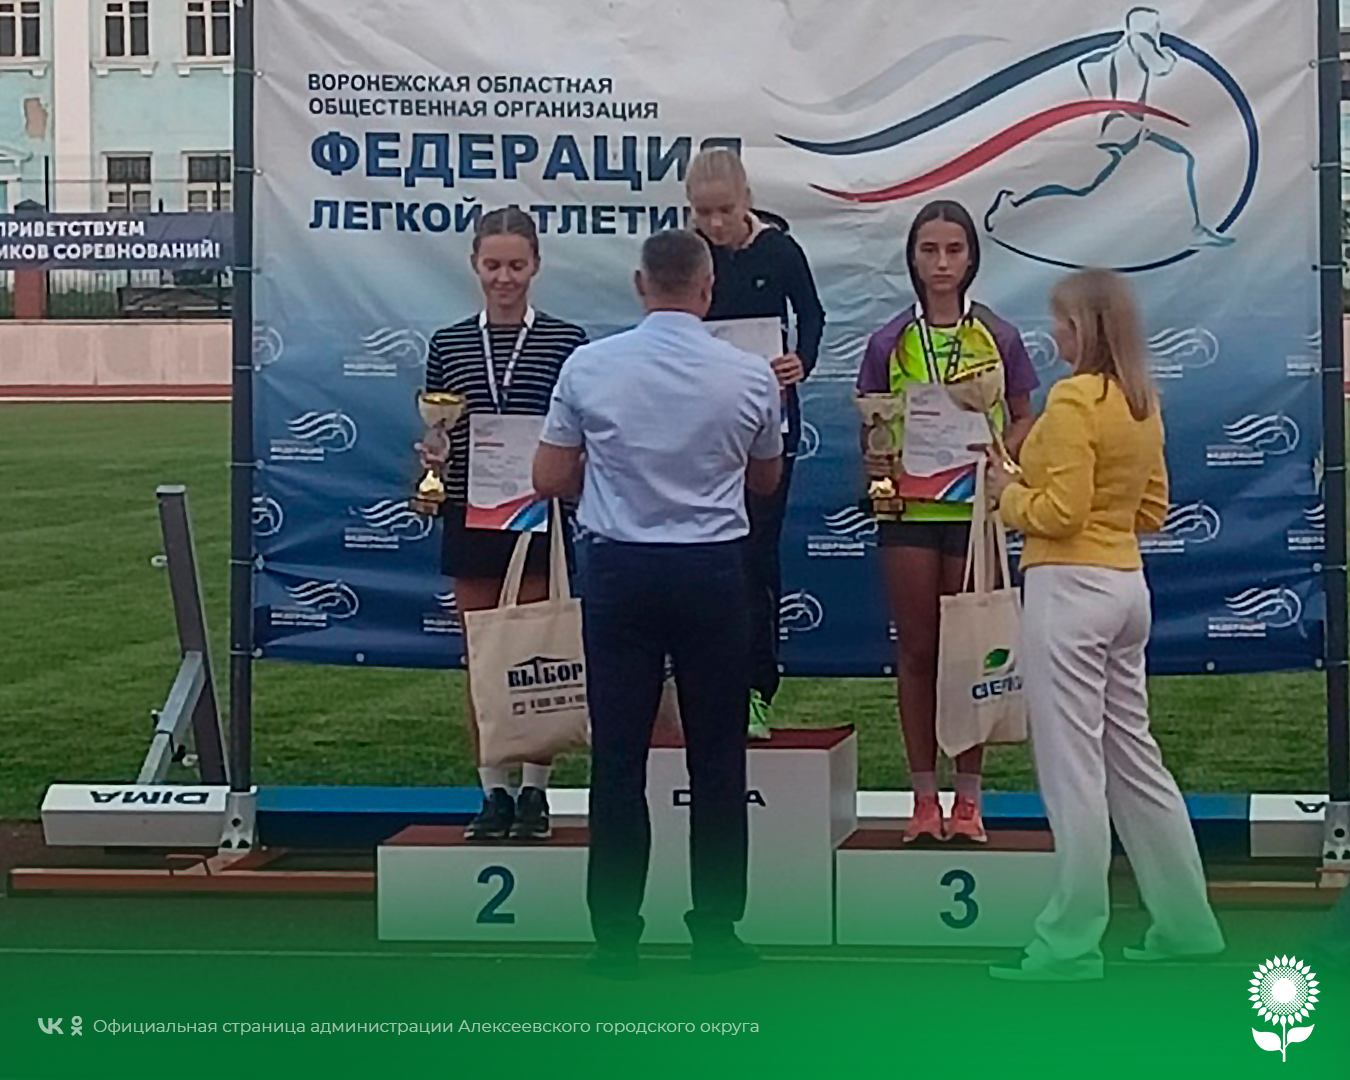 Спортсмены Алексеевского городского округа приняли участие в Межрегиональных соревнованиях по легкой атлетике.